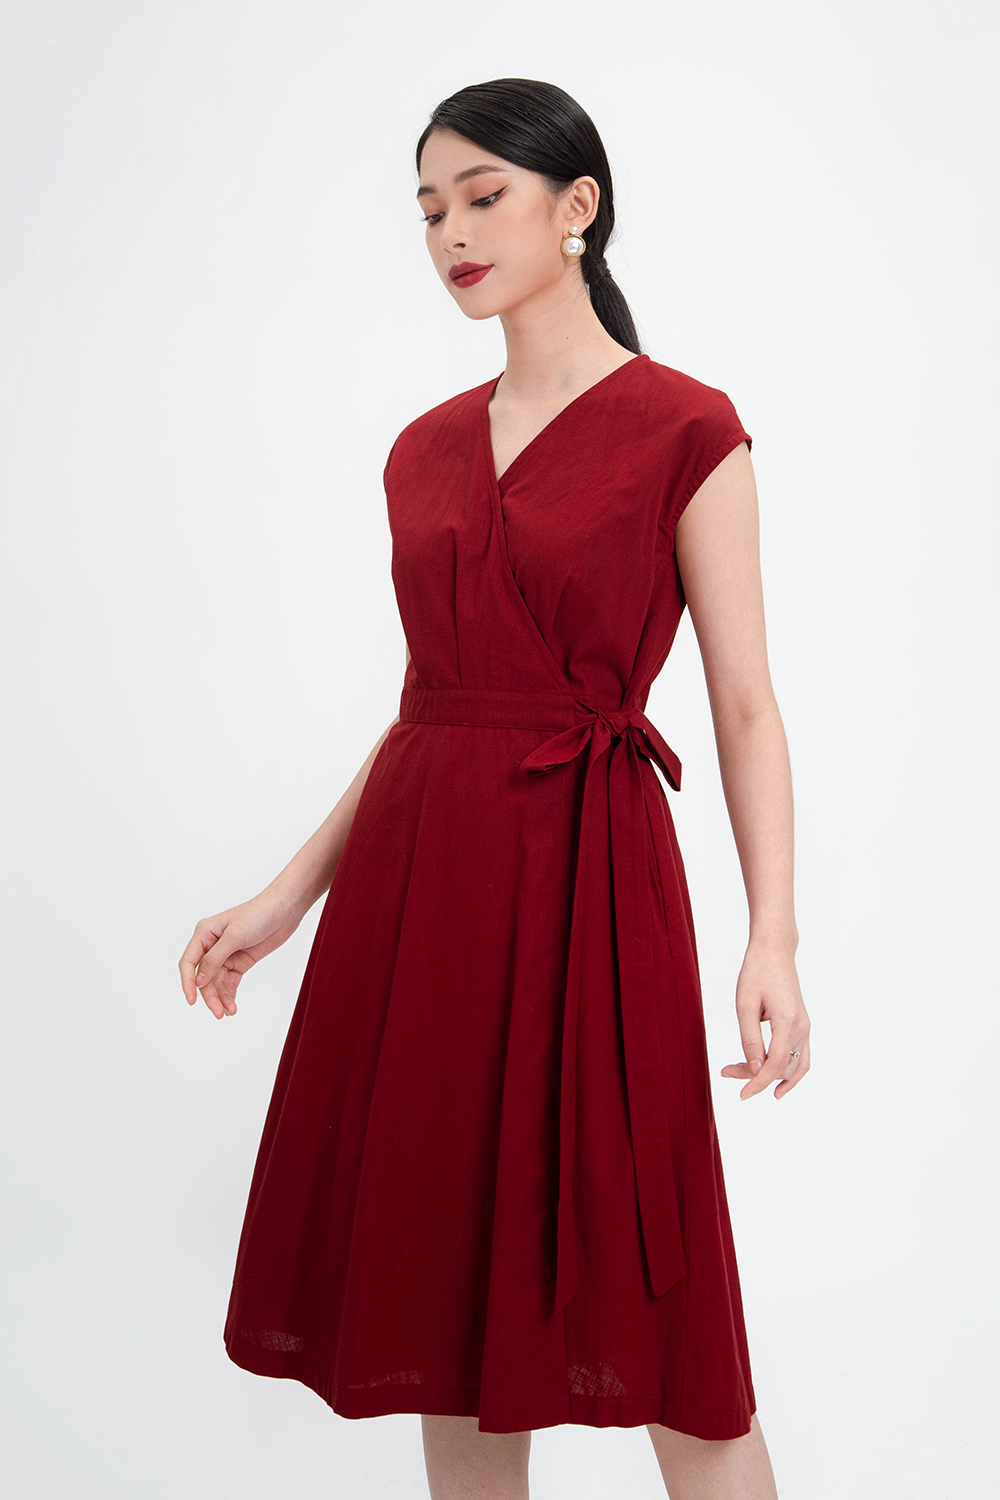 Đầm xòe màu đỏ cổ tim phối nơ eo KK107-12 | Thời trang công sở K&K ...